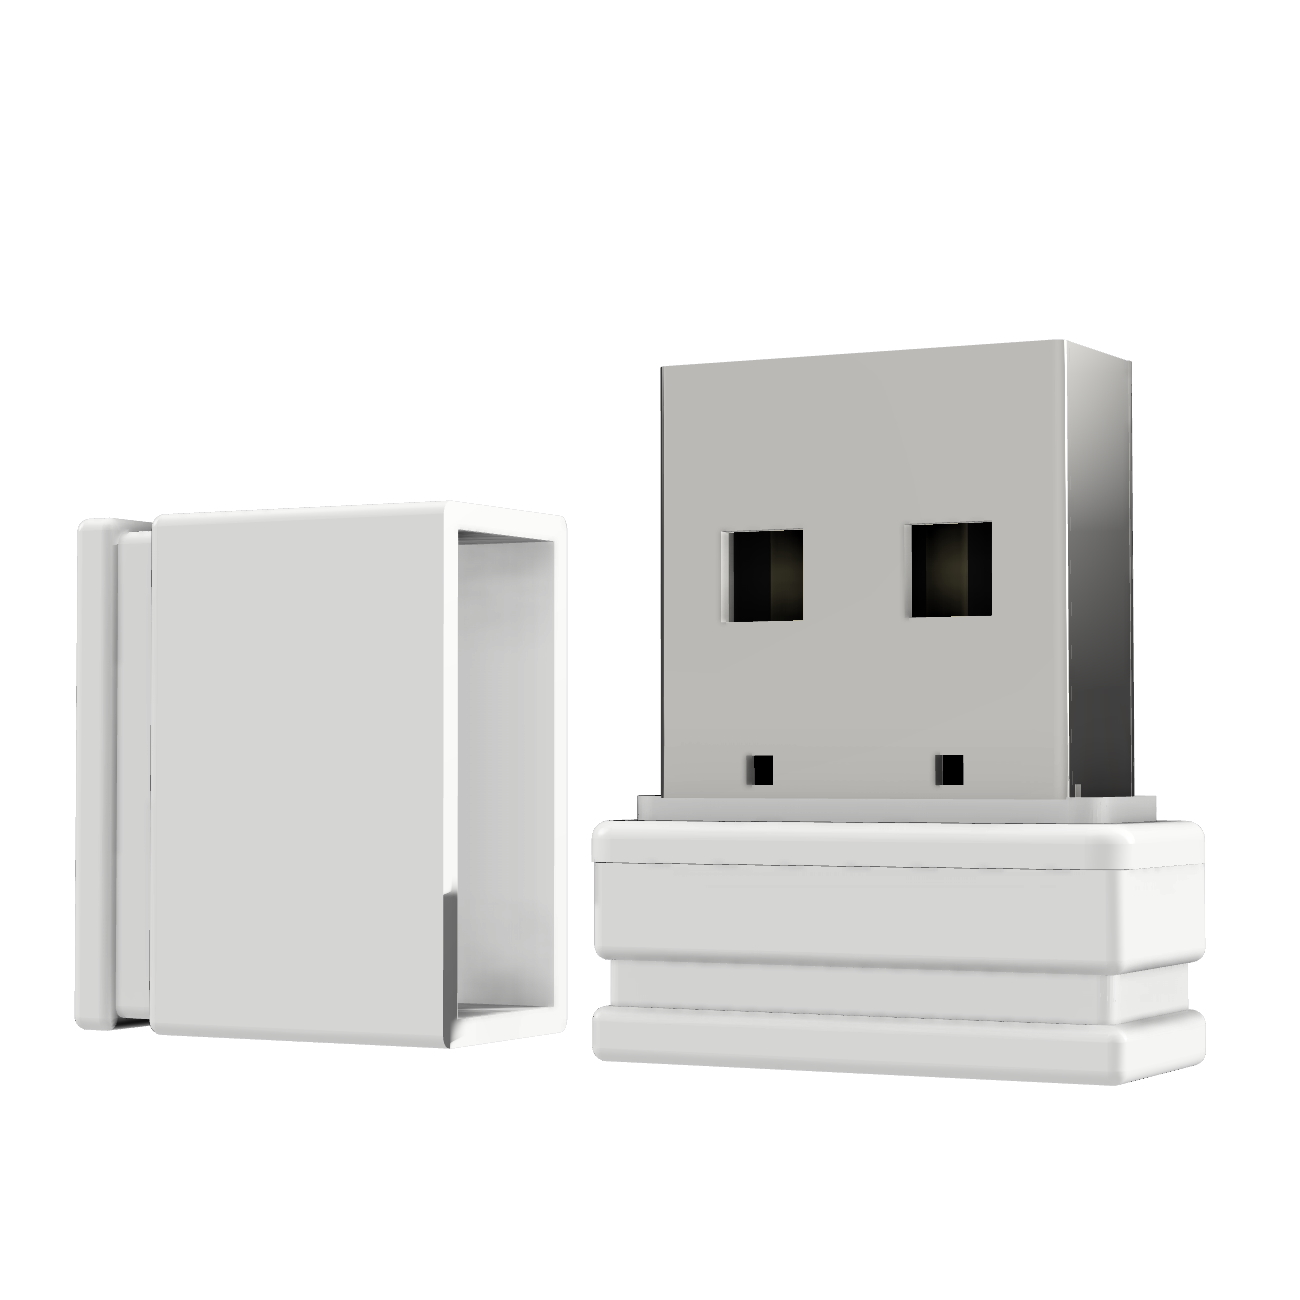 GERMANY USB GB) (Weiß, USB-Stick Mini ®ULTRA P1 8